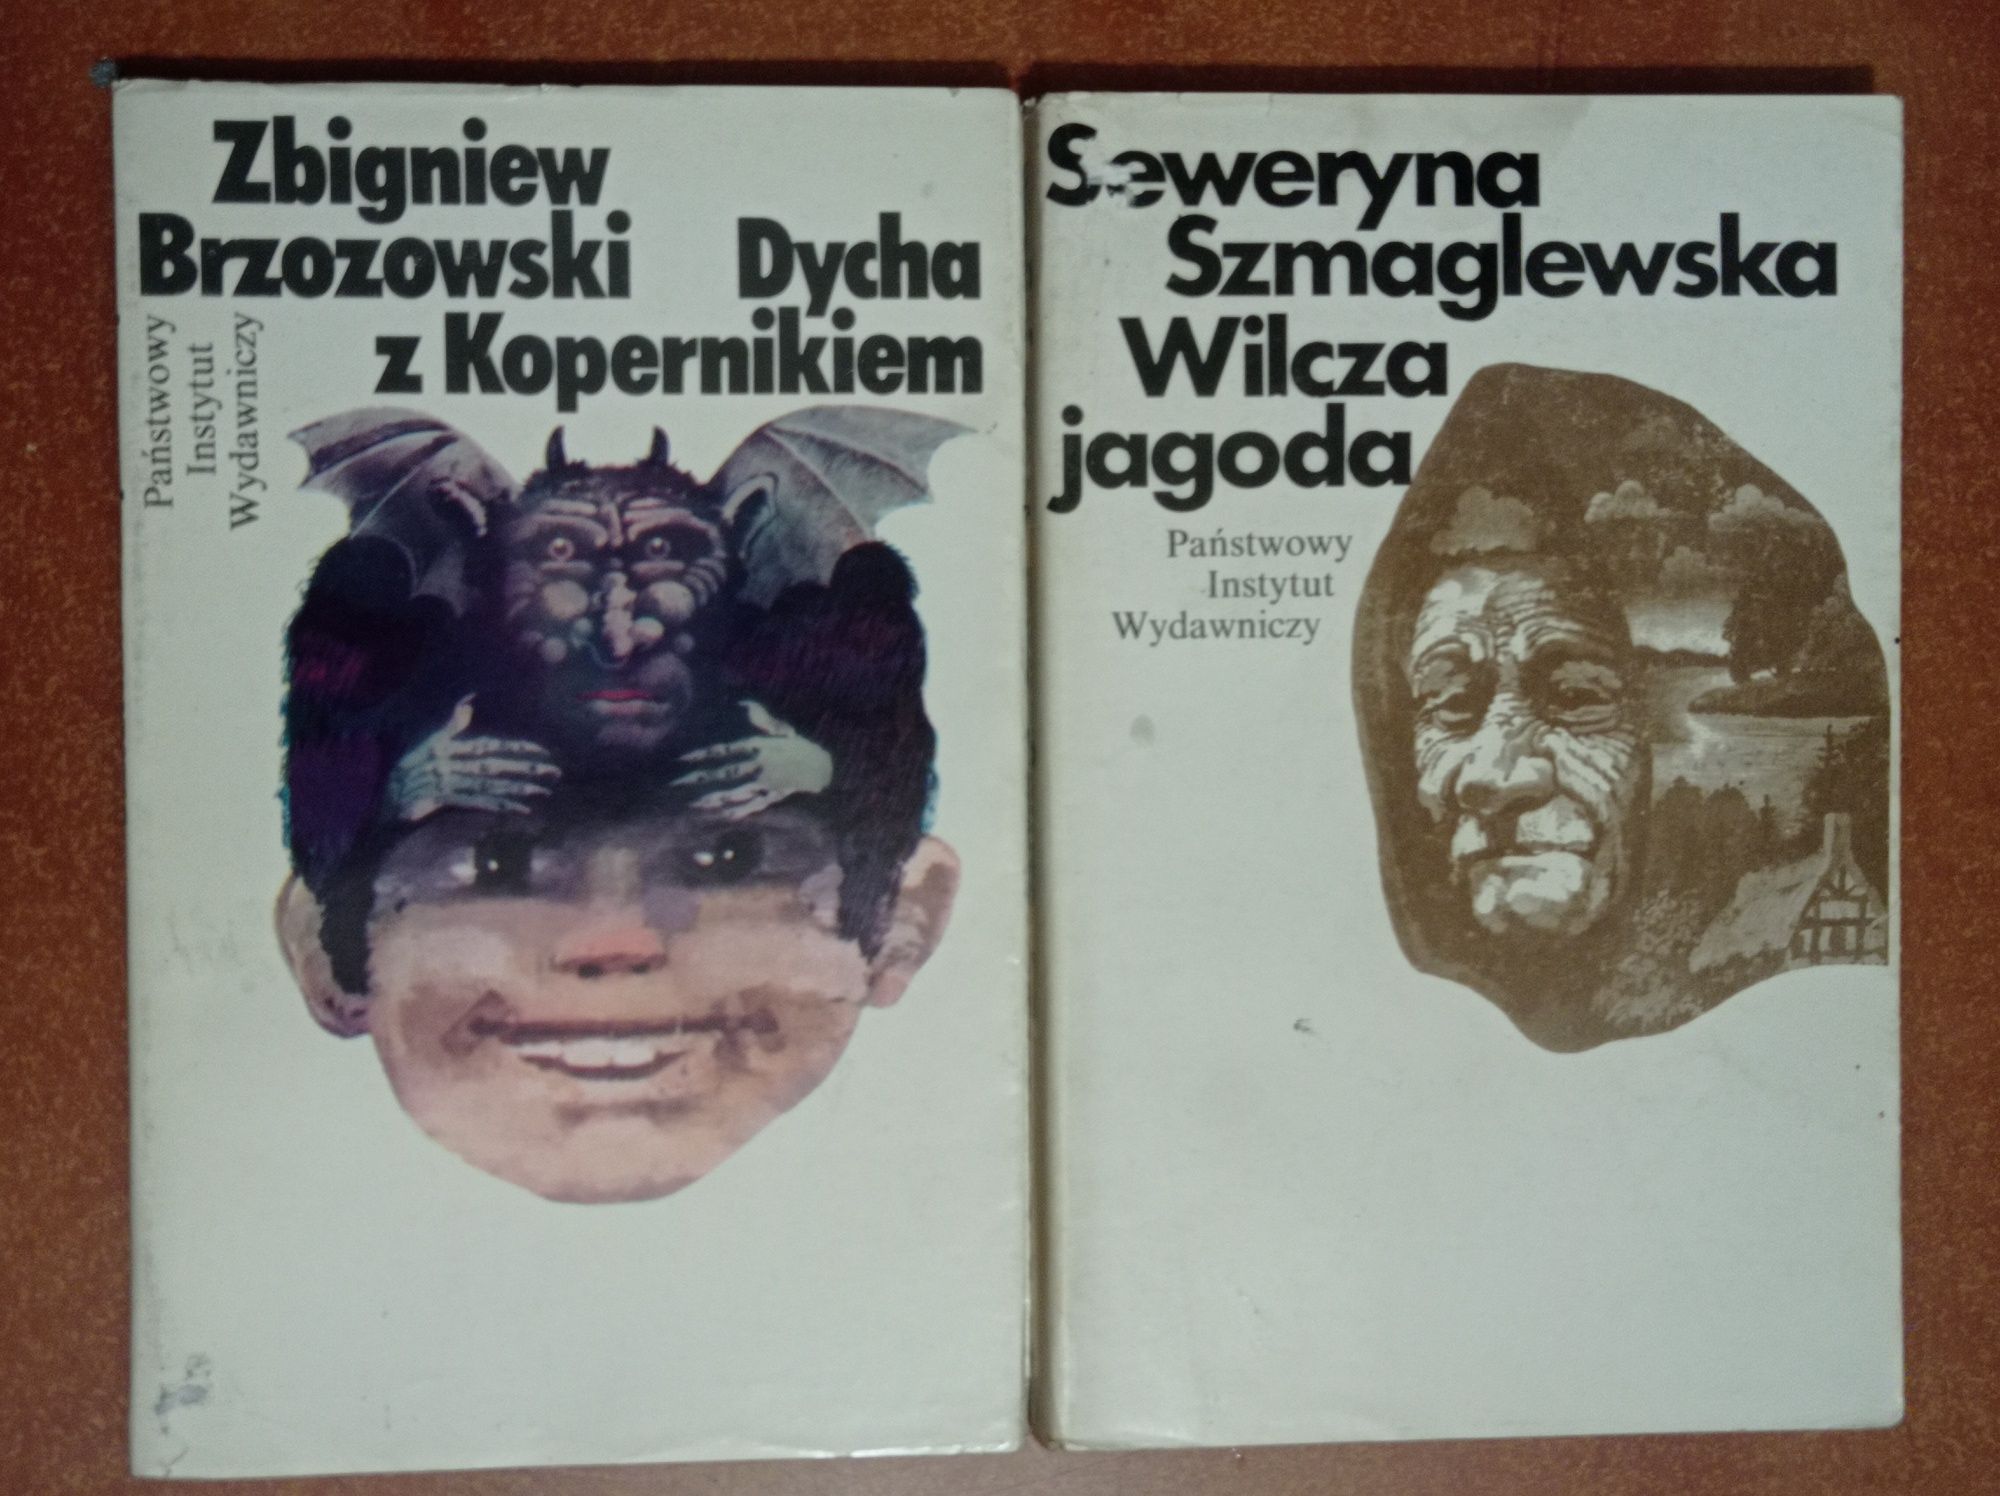 8 książek Książę nocy Nowakowski Totenhorn Wilcza jagoda Szmaglewska